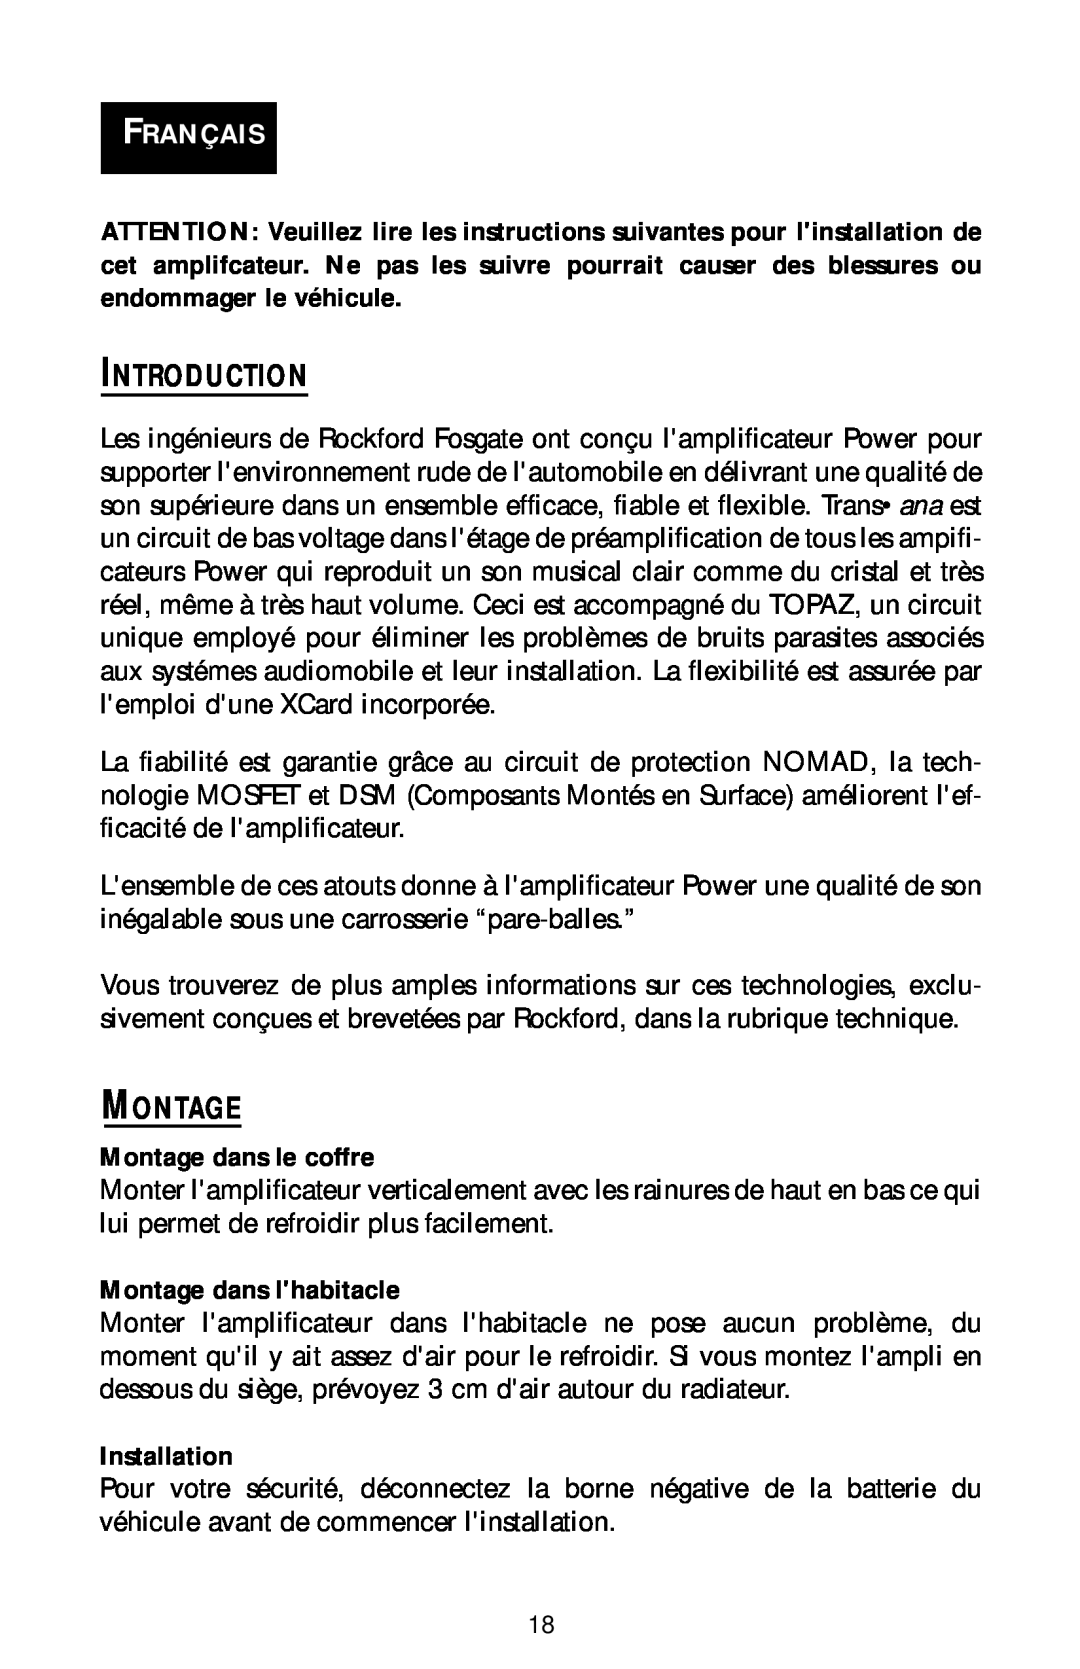 Rockford Fosgate bd1500.1 manual Introduction, Français, Montage dans le coffre, Montage dans lhabitacle, Installation 